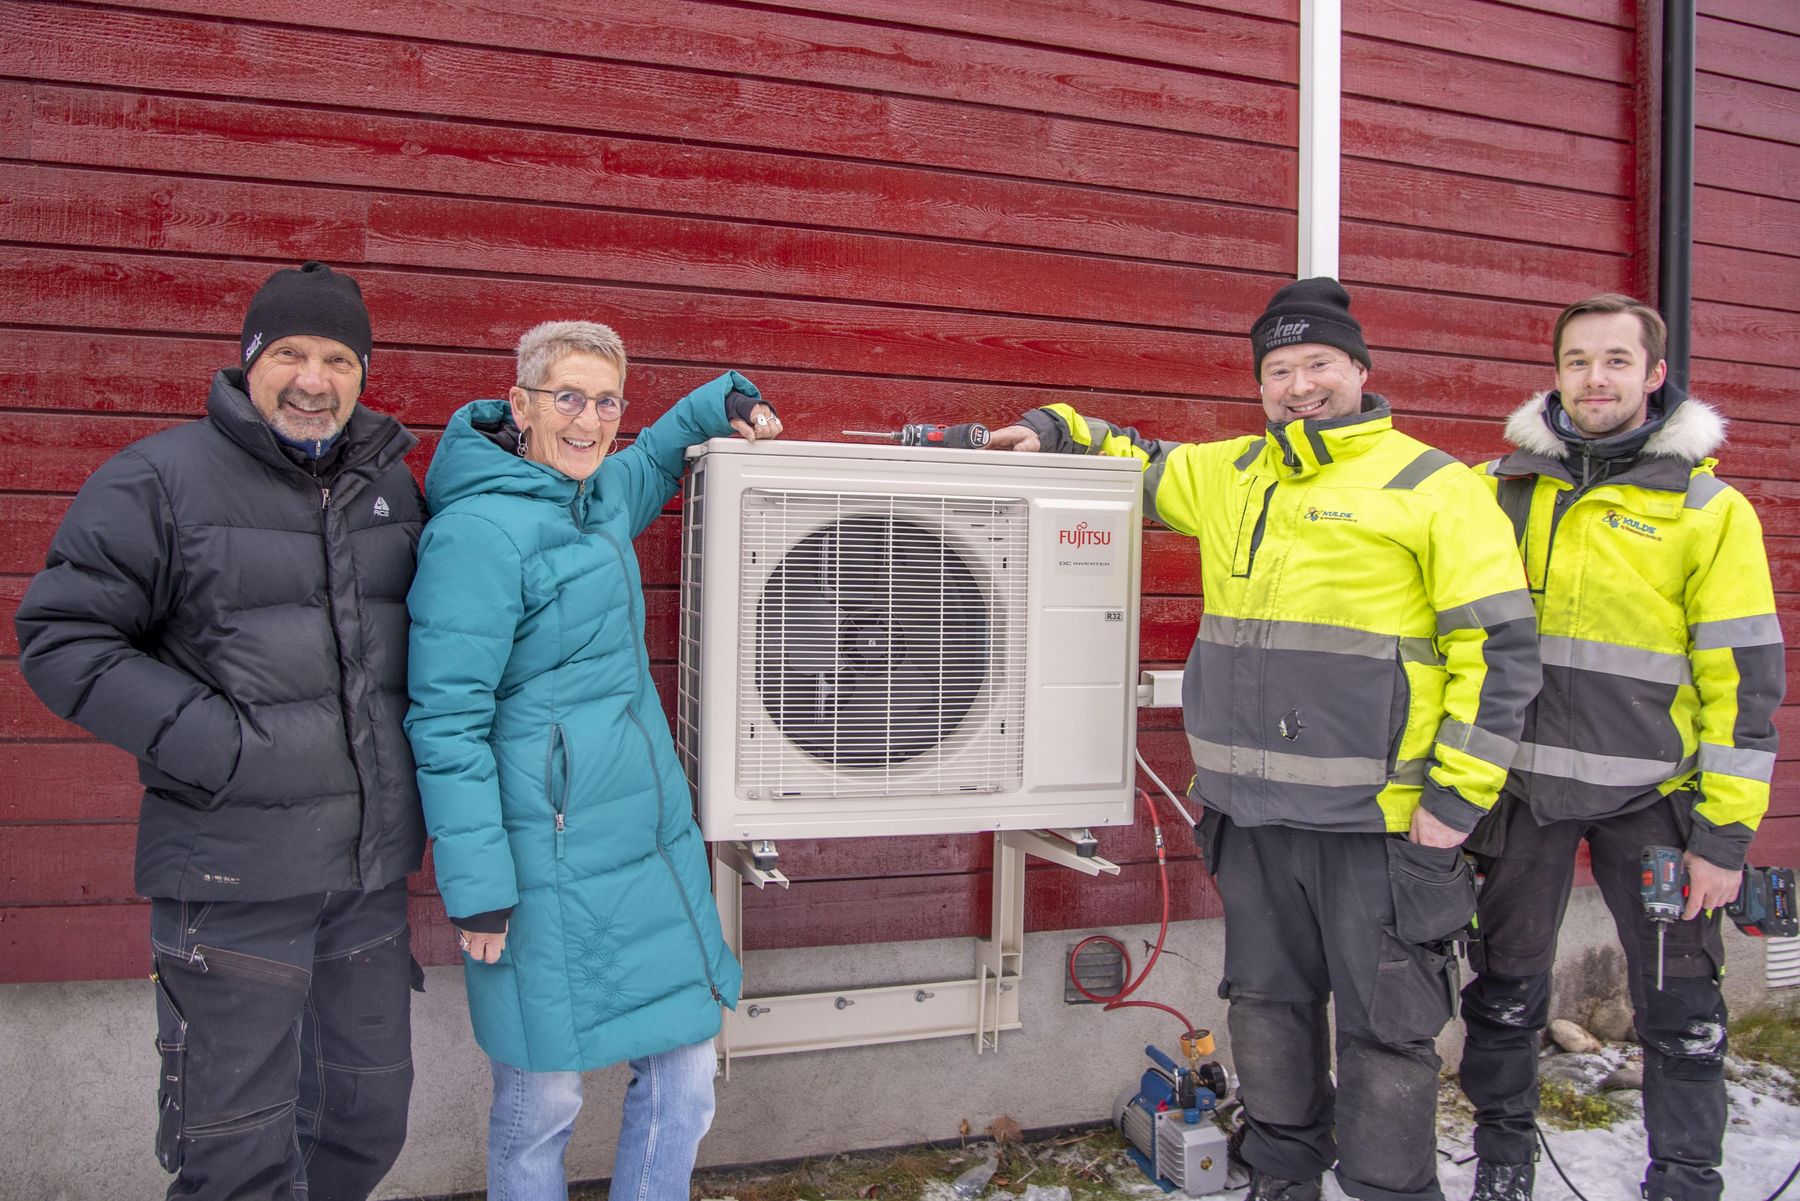 Viktor Johnsen og Britt Søvik er storfornøyde med sin nye Fujitsu Norgespumpe 6.4. Her sammen med montørene Raymond Ratama og Nils Thomas Aronsen fra Kulde og Varmepumpe Service AS. ​​​​‌﻿‍﻿​‍​‍‌‍﻿﻿‌﻿​‍‌‍‍‌‌‍‌﻿‌‍‍‌‌‍﻿‍​‍​‍​﻿‍‍​‍​‍‌﻿​﻿‌‍​‌‌‍﻿‍‌‍‍‌‌﻿‌​‌﻿‍‌​‍﻿‍‌‍‍‌‌‍﻿﻿​‍​‍​‍﻿​​‍​‍‌‍‍​‌﻿​‍‌‍‌‌‌‍‌‍​‍​‍​﻿‍‍​‍​‍‌‍‍​‌﻿‌​‌﻿‌​‌﻿​​‌﻿​﻿​﻿‍‍​‍﻿﻿​‍﻿﻿‌‍‍‌‌﻿​﻿‌‍‍​‌‍​‌‌﻿‌‍‌﻿​﻿‌‍‍﻿‌﻿​‍‌‍​‌‌‍‌‍‌﻿‌​​‍﻿‍‌﻿​﻿‌‍​‌‌‍﻿‍‌‍‍‌‌﻿‌​‌﻿‍‌​‍﻿‍‌﻿​﻿‌﻿‌​‌﻿‌‌‌‍‌​‌‍‍‌‌‍﻿﻿​‍﻿﻿‌‍‍‌‌‍﻿‍‌﻿‌​‌‍‌‌‌‍﻿‍‌﻿‌​​‍﻿﻿‌‍‌‌‌‍‌​‌‍‍‌‌﻿‌​​‍﻿﻿‌‍﻿‌‌‍﻿﻿‌‍‌​‌‍‌‌​﻿﻿‌‌﻿​​‌﻿​‍‌‍‌‌‌﻿​﻿‌‍‌‌‌‍﻿‍‌﻿‌​‌‍​‌‌﻿‌​‌‍‍‌‌‍﻿﻿‌‍﻿‍​﻿‍﻿‌‍‍‌‌‍‌​​﻿﻿‌‌‍​‌‌‍‌​​﻿‍​‌‍‌​​﻿‌‍​﻿‌‍​﻿​﻿‌‍​‌​‍﻿‌‌‍‌​​﻿‌﻿​﻿‌‌​﻿​​​‍﻿‌​﻿‌​‌‍​﻿​﻿‌‍​﻿‌﻿​‍﻿‌‌‍​‍​﻿‌‌‌‍‌‍​﻿‌​​‍﻿‌‌‍‌​​﻿‍‌‌‍‌​​﻿‌﻿​﻿‌‌​﻿​﻿​﻿‌﻿​﻿‌﻿‌‍​﻿​﻿​﻿‌‍​‍‌‍‌‌​﻿‍﻿‌﻿‌​‌﻿‍‌‌﻿​​‌‍‌‌​﻿﻿‌‌‍​‌‌﻿​‍‌﻿‌​‌‍‍‌‌‍​﻿‌‍﻿​‌‍‌‌​﻿‍﻿‌﻿​​‌‍​‌‌﻿‌​‌‍‍​​﻿﻿‌‌‍​﻿‌‍﻿﻿‌‍﻿‍‌﻿‌​‌‍‌‌‌‍﻿‍‌﻿‌​​‍‌‌​﻿‌‌‌​​‍‌‌﻿﻿‌‍‍﻿‌‍‌‌‌﻿‍‌​‍‌‌​﻿​﻿‌​‌​​‍‌‌​﻿​﻿‌​‌​​‍‌‌​﻿​‍​﻿​‍‌‍​‌​﻿‌﻿​﻿‌‌‌‍​‍‌‍​﻿​﻿​‍‌‍‌‌‌‍‌‌​﻿‌﻿‌‍‌​‌‍​‍‌‍‌‍​‍‌‌​﻿​‍​﻿​‍​‍‌‌​﻿‌‌‌​‌​​‍﻿‍‌‍​‌‌‍﻿​‌﻿‌​​﻿﻿﻿‌‍​‍‌‍​‌‌﻿​﻿‌‍‌‌‌‌‌‌‌﻿​‍‌‍﻿​​﻿﻿‌‌‍‍​‌﻿‌​‌﻿‌​‌﻿​​‌﻿​﻿​‍‌‌​﻿​﻿‌​​‌​‍‌‌​﻿​‍‌​‌‍​‍‌‌​﻿​‍‌​‌‍‌‍‍‌‌﻿​﻿‌‍‍​‌‍​‌‌﻿‌‍‌﻿​﻿‌‍‍﻿‌﻿​‍‌‍​‌‌‍‌‍‌﻿‌​​‍﻿‍‌﻿​﻿‌‍​‌‌‍﻿‍‌‍‍‌‌﻿‌​‌﻿‍‌​‍﻿‍‌﻿​﻿‌﻿‌​‌﻿‌‌‌‍‌​‌‍‍‌‌‍﻿﻿​‍‌‍‌‍‍‌‌‍‌​​﻿﻿‌‌‍​‌‌‍‌​​﻿‍​‌‍‌​​﻿‌‍​﻿‌‍​﻿​﻿‌‍​‌​‍﻿‌‌‍‌​​﻿‌﻿​﻿‌‌​﻿​​​‍﻿‌​﻿‌​‌‍​﻿​﻿‌‍​﻿‌﻿​‍﻿‌‌‍​‍​﻿‌‌‌‍‌‍​﻿‌​​‍﻿‌‌‍‌​​﻿‍‌‌‍‌​​﻿‌﻿​﻿‌‌​﻿​﻿​﻿‌﻿​﻿‌﻿‌‍​﻿​﻿​﻿‌‍​‍‌‍‌‌​‍‌‍‌﻿‌​‌﻿‍‌‌﻿​​‌‍‌‌​﻿﻿‌‌‍​‌‌﻿​‍‌﻿‌​‌‍‍‌‌‍​﻿‌‍﻿​‌‍‌‌​‍‌‍‌﻿​​‌‍​‌‌﻿‌​‌‍‍​​﻿﻿‌‌‍​﻿‌‍﻿﻿‌‍﻿‍‌﻿‌​‌‍‌‌‌‍﻿‍‌﻿‌​​‍‌‌​﻿‌‌‌​​‍‌‌﻿﻿‌‍‍﻿‌‍‌‌‌﻿‍‌​‍‌‌​﻿​﻿‌​‌​​‍‌‌​﻿​﻿‌​‌​​‍‌‌​﻿​‍​﻿​‍‌‍​‌​﻿‌﻿​﻿‌‌‌‍​‍‌‍​﻿​﻿​‍‌‍‌‌‌‍‌‌​﻿‌﻿‌‍‌​‌‍​‍‌‍‌‍​‍‌‌​﻿​‍​﻿​‍​‍‌‌​﻿‌‌‌​‌​​‍﻿‍‌‍​‌‌‍﻿​‌﻿‌​​‍​‍‌﻿﻿‌